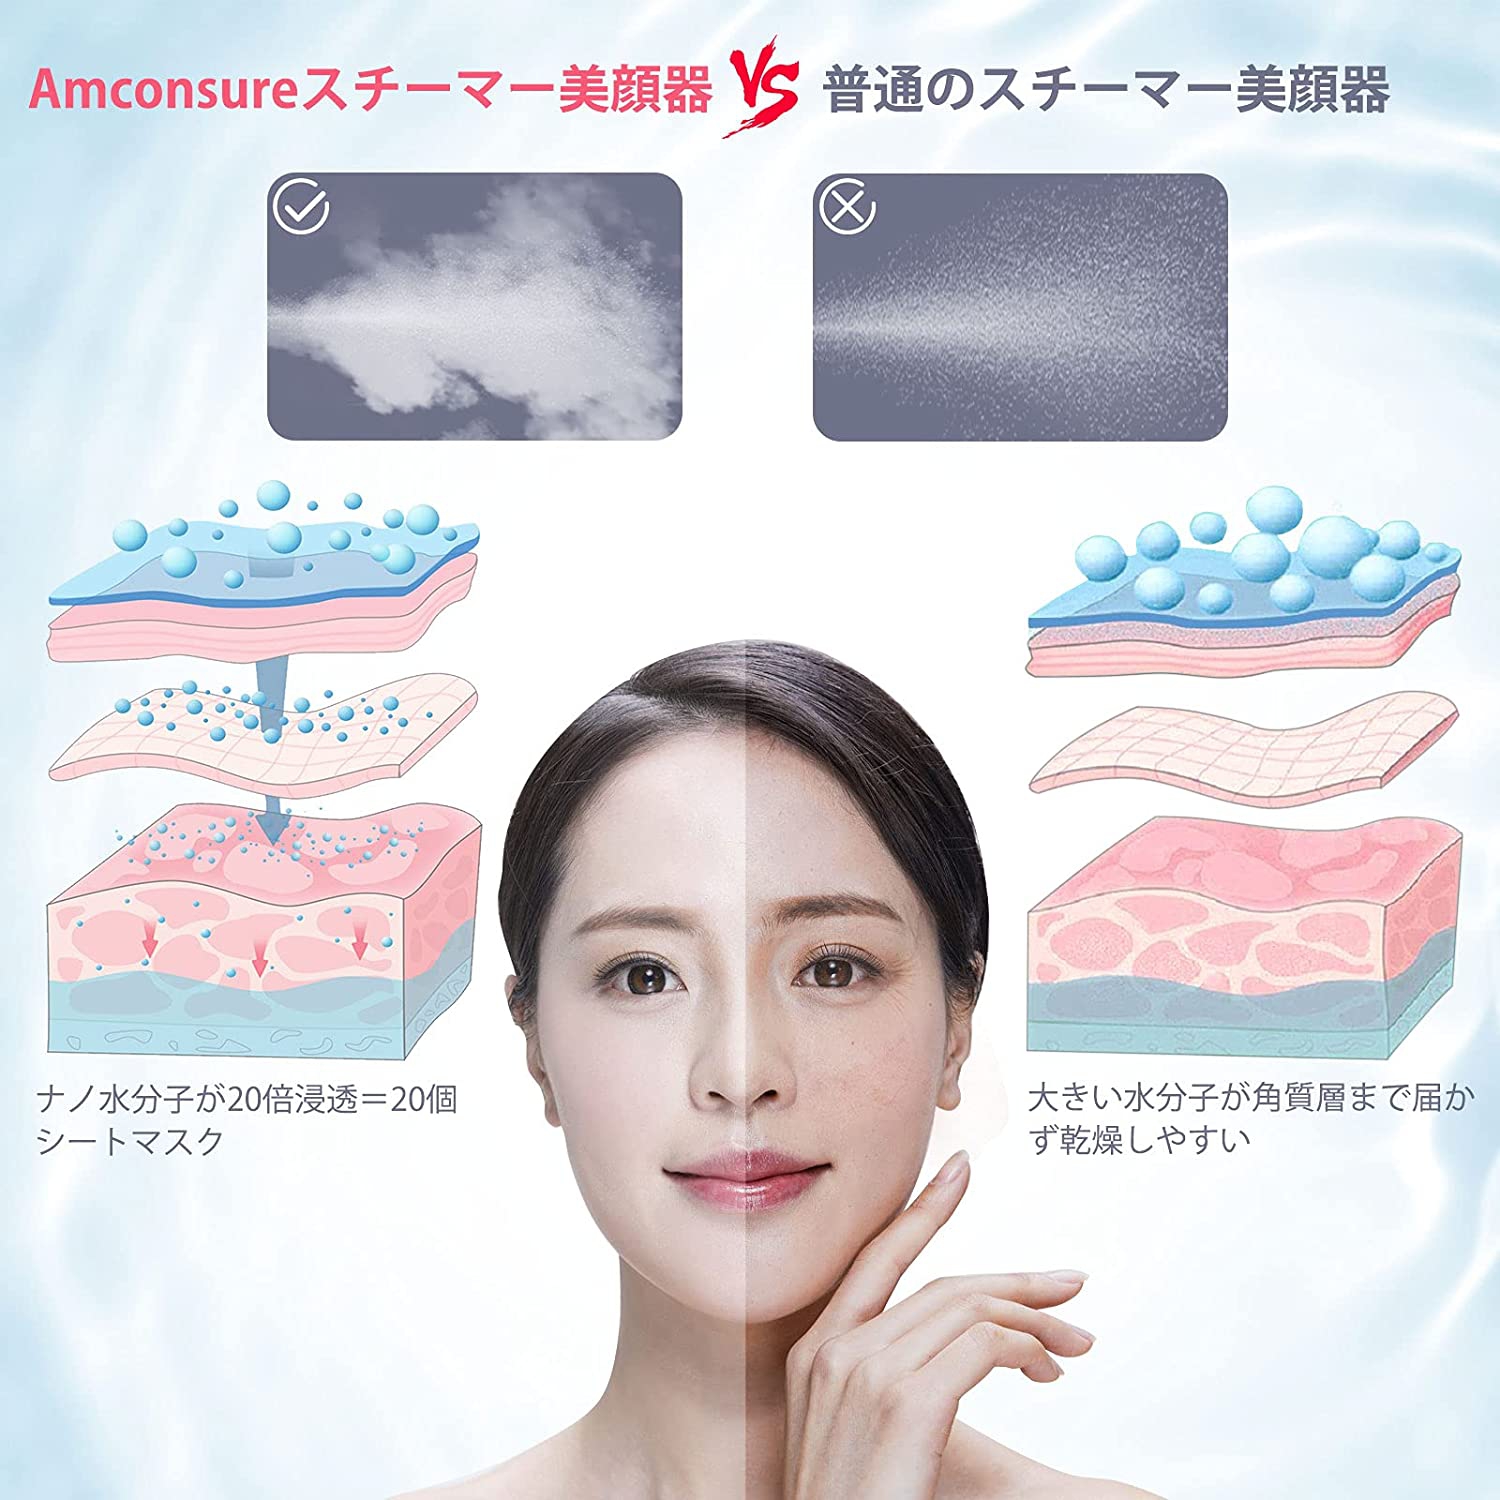 Amconsure(アンコンシュア) スチーム美顔器の商品画像3 